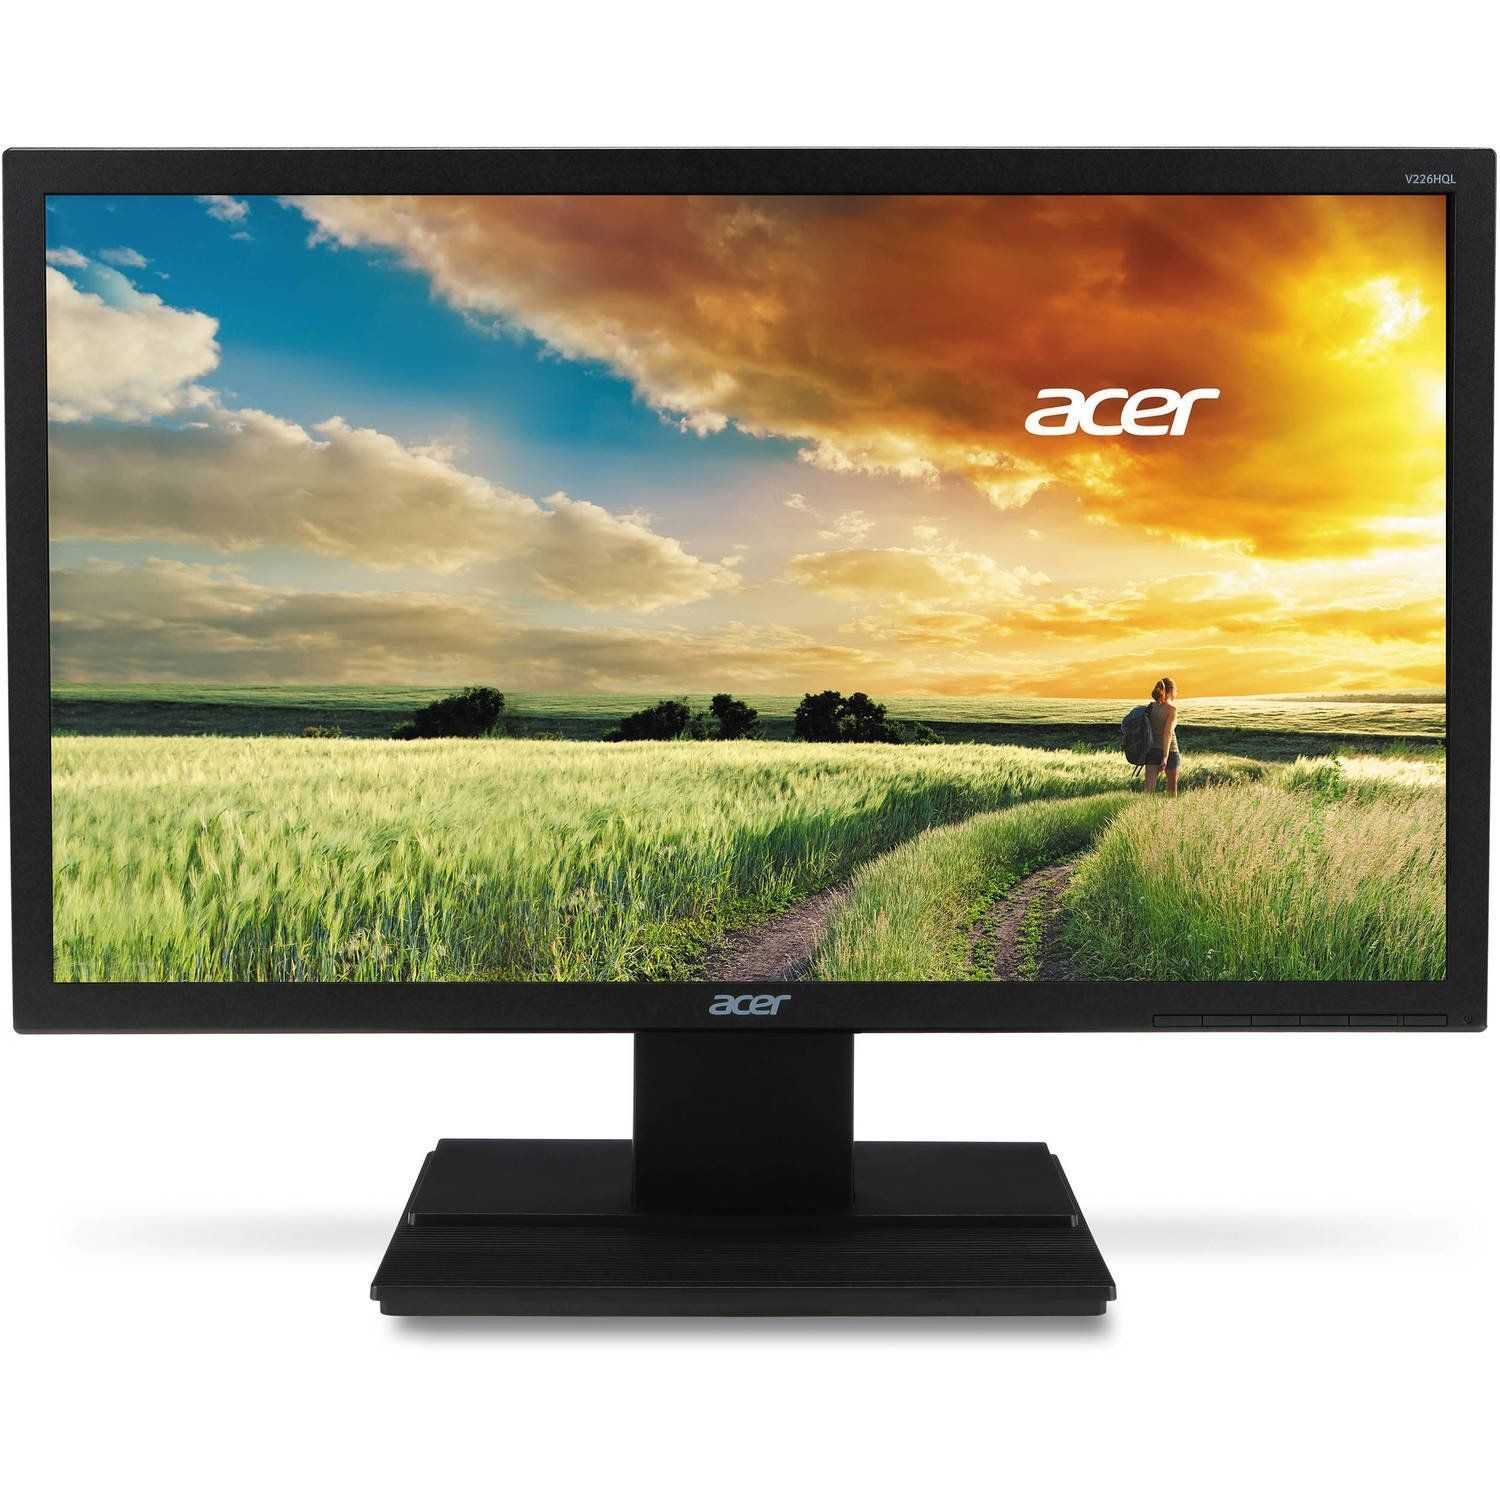 Acer g226hqlbbd (черный) - купить , скидки, цена, отзывы, обзор, характеристики - мониторы